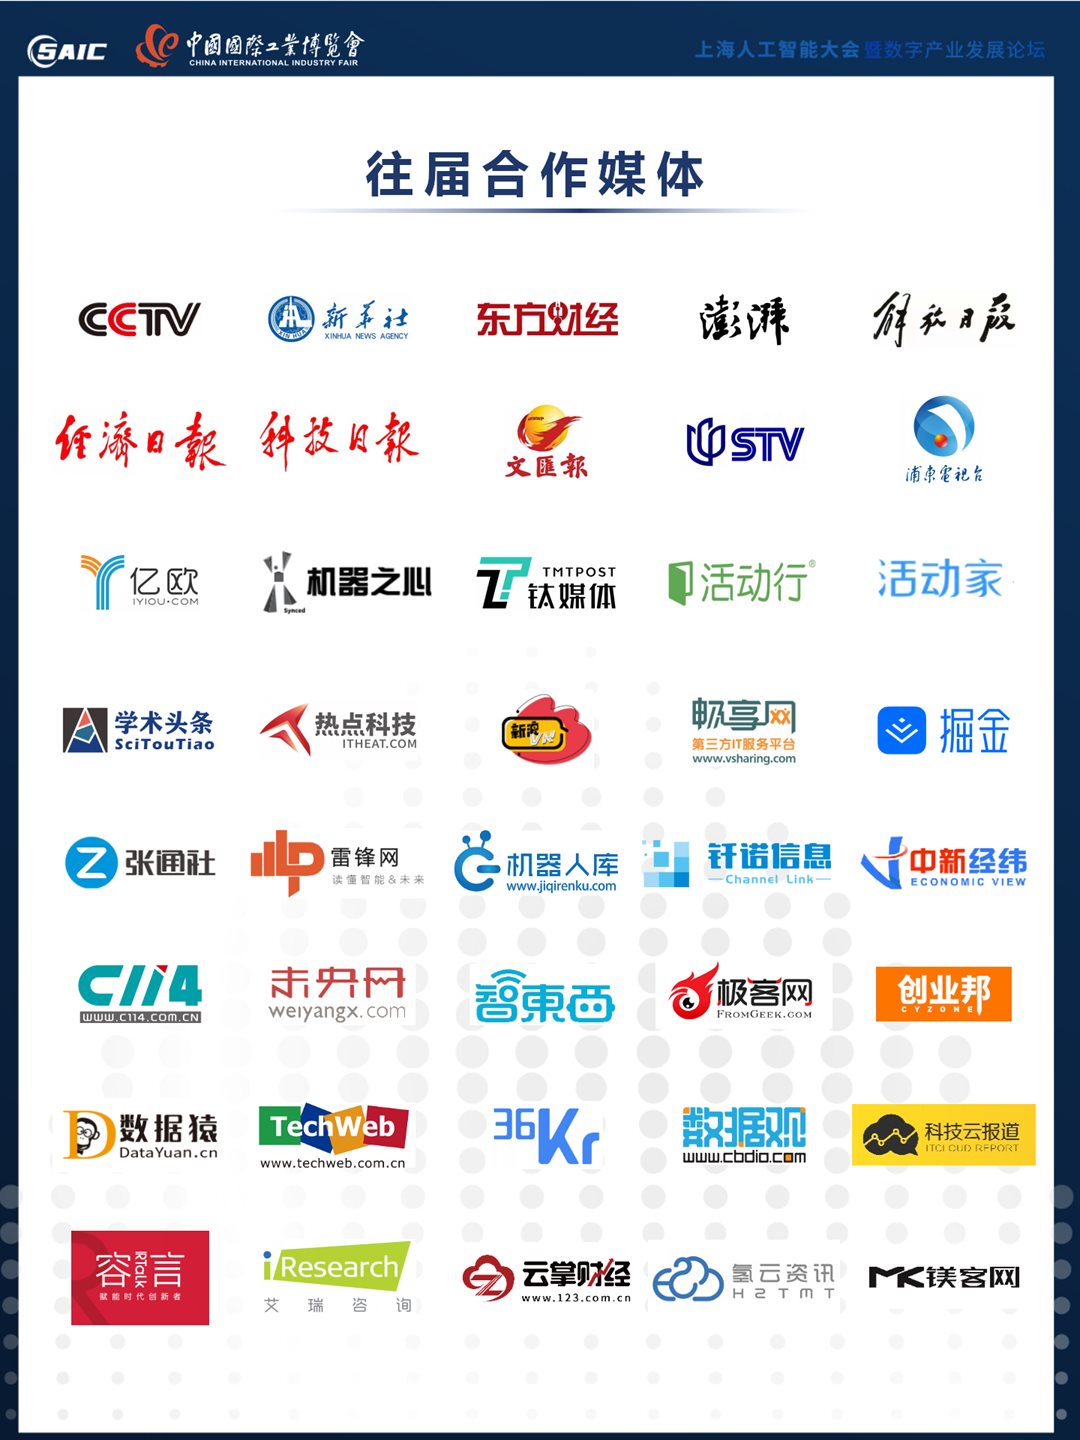 8th上海AI大会 大会合作方案 0517（对外）_07.png